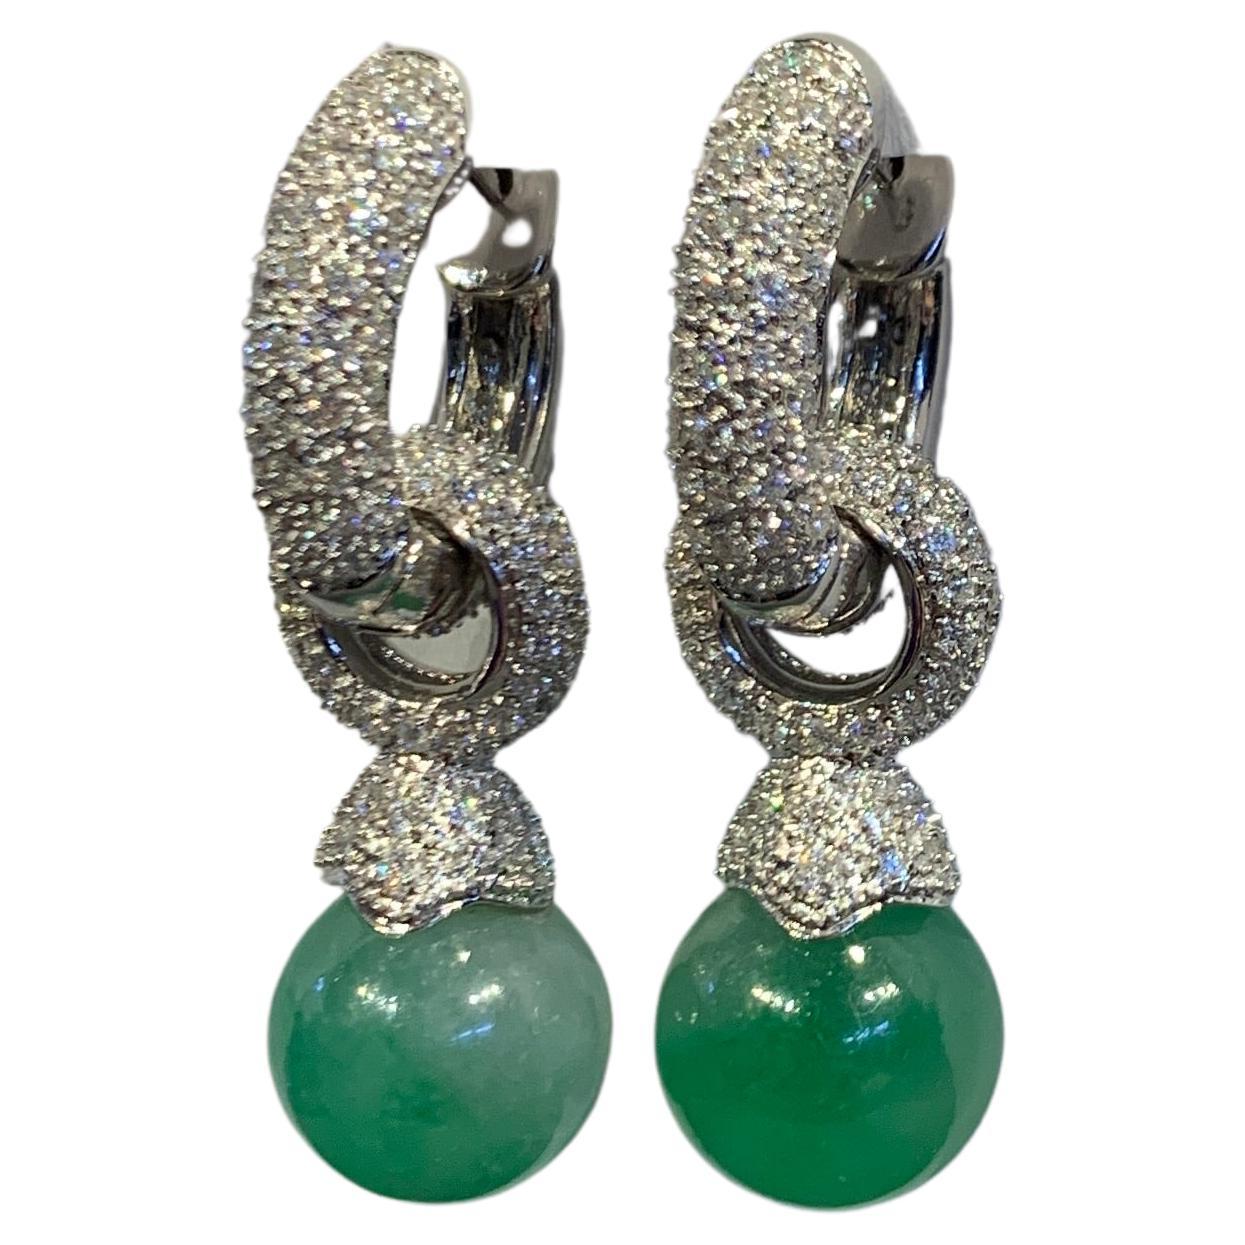 Jade & Diamant Tag & Nacht Ohrringe

Ein Paar Ohrringe aus 18 Karat Weißgold, besetzt mit ca. 3,10 Karat Diamanten im Rundschliff und 2 Jadeperlen mit einem Gewicht von ca. 37,52 Karat. Die Jadeperlenaufsätze sind abnehmbar, so dass die Ohrringe auf